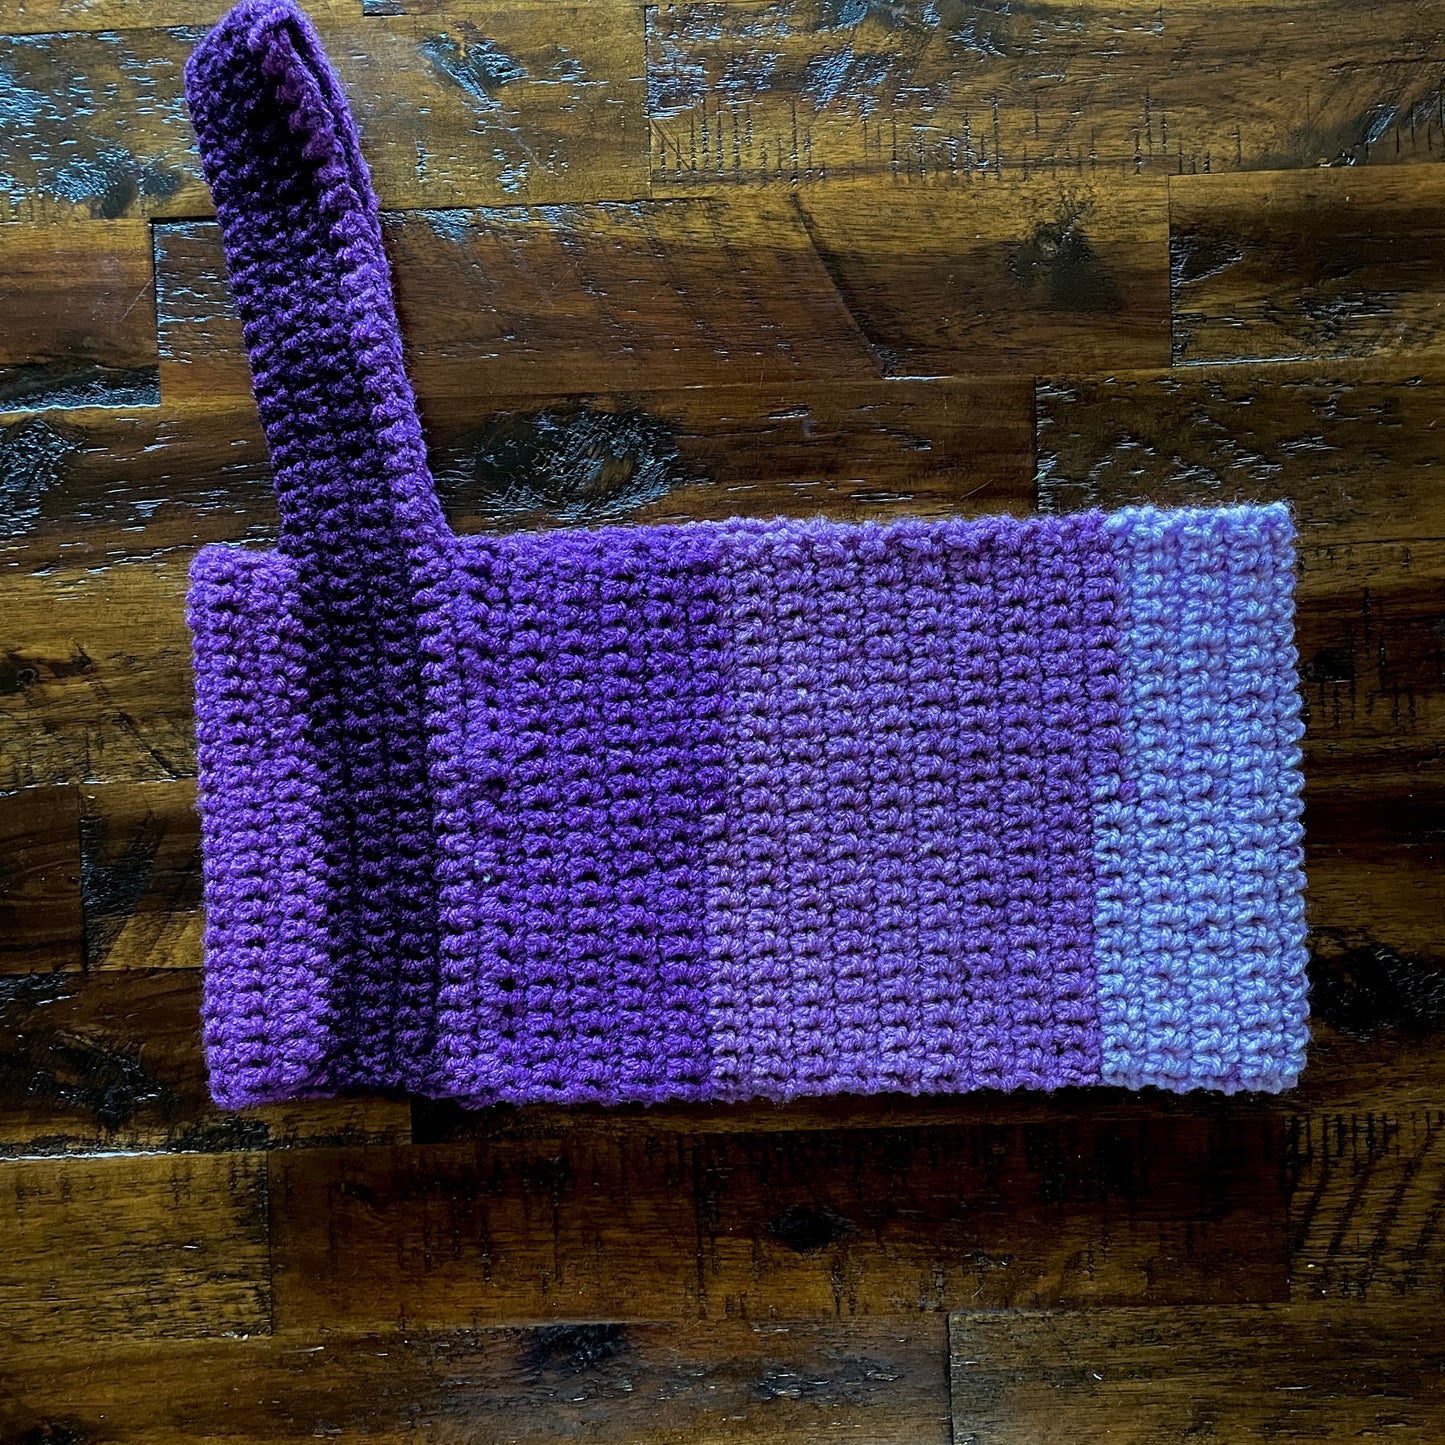 purple one-shoulder crochet top